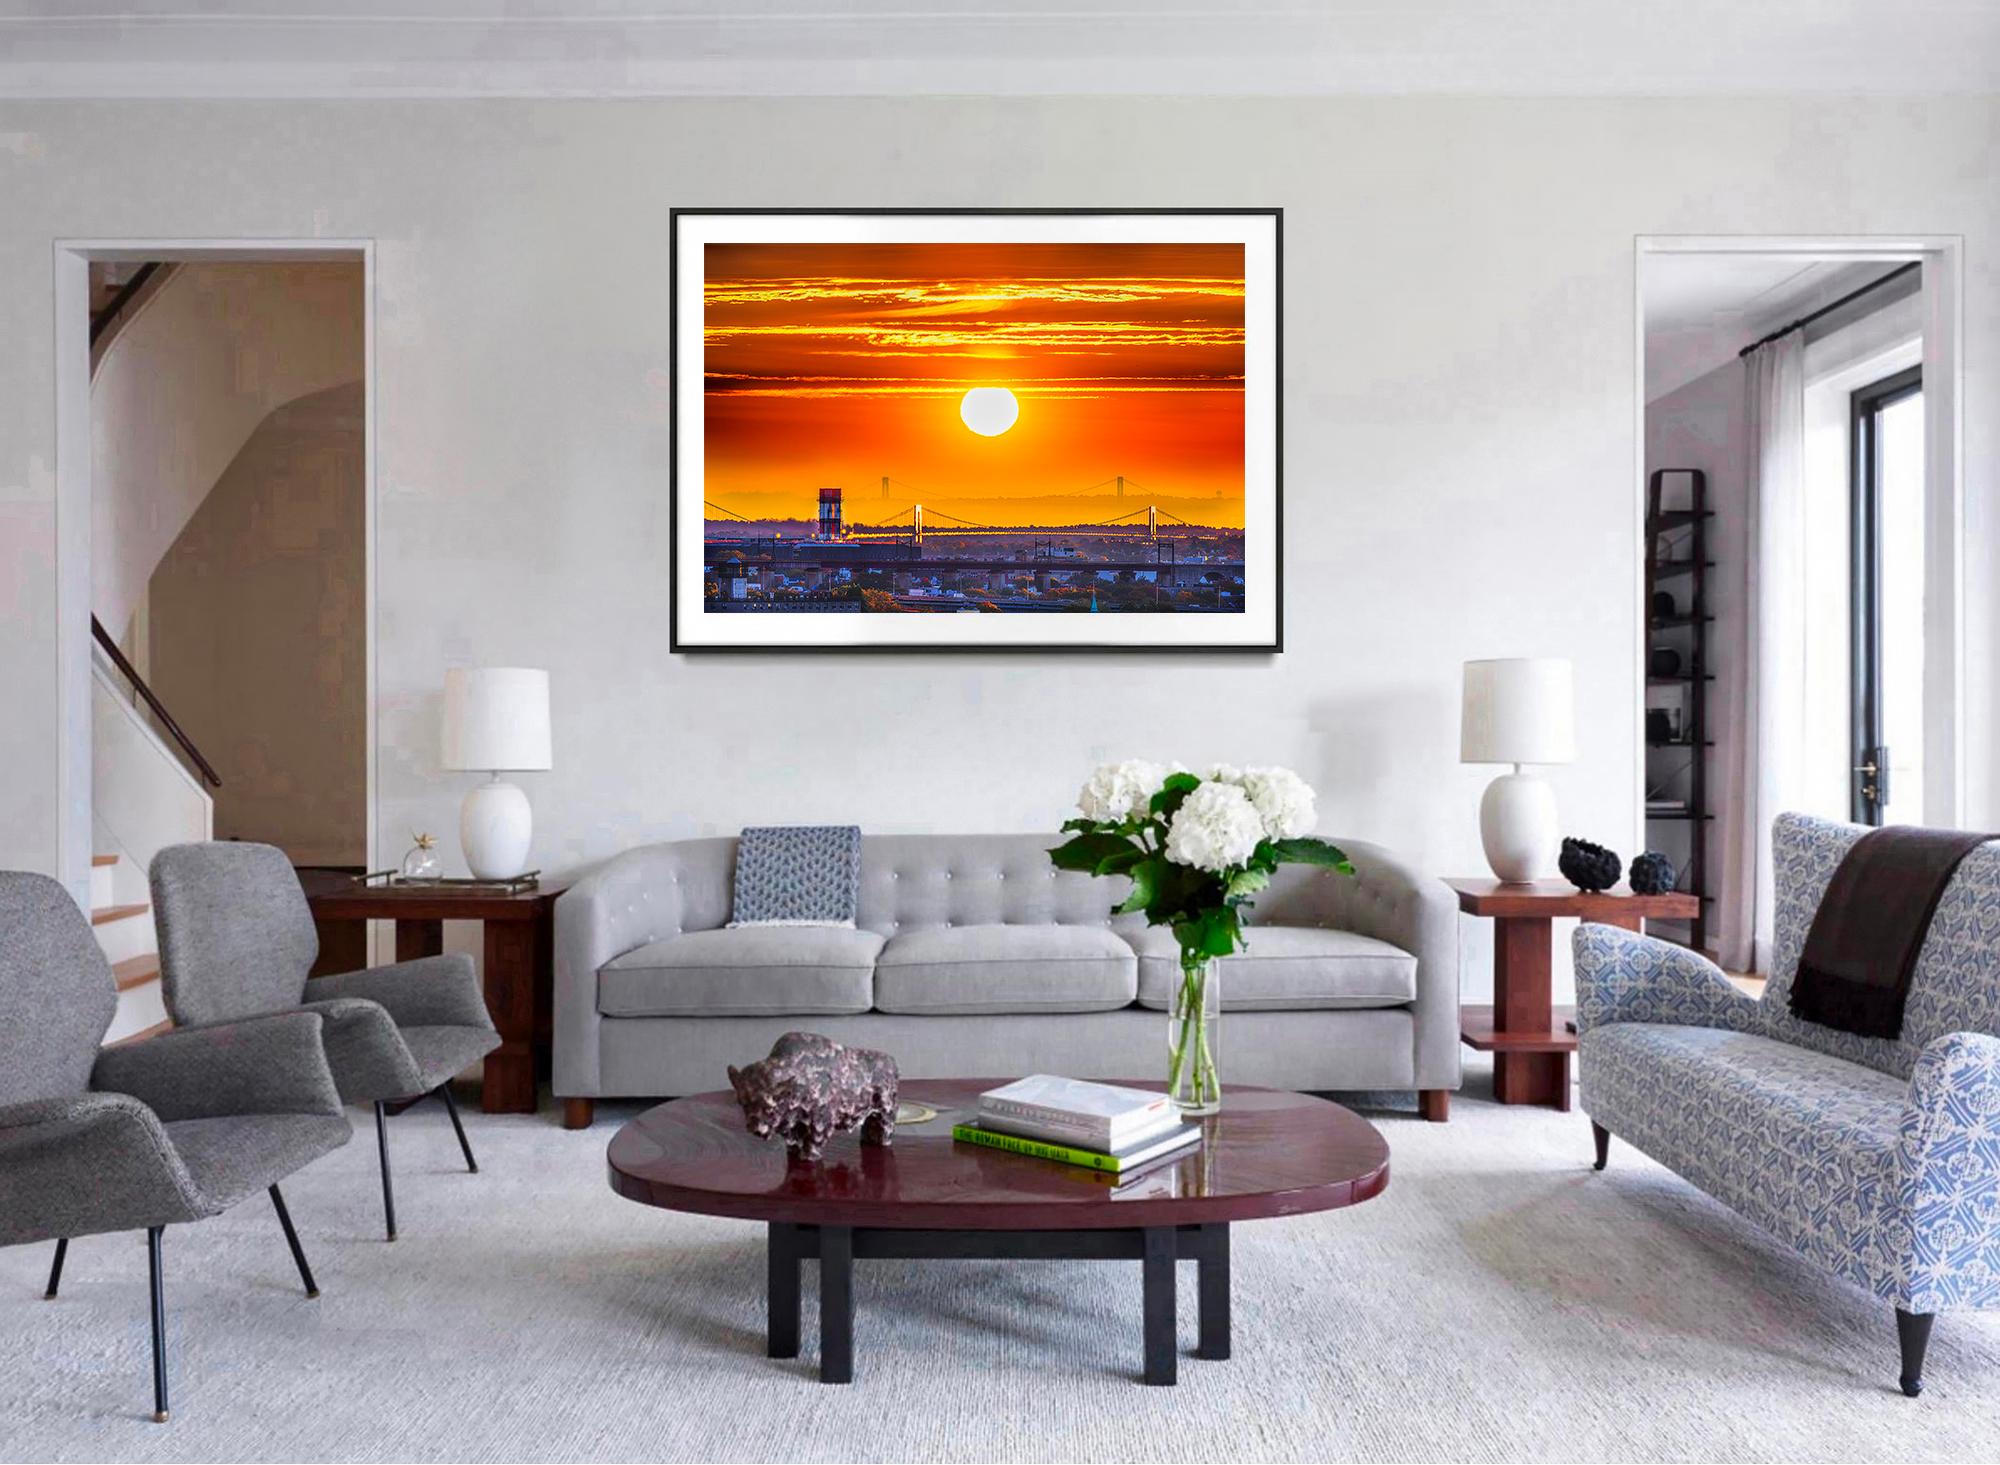 Ein einzigartiger Aussichtspunkt, ein farbenprächtiger Sonnenuntergang und leuchtende Farben verleihen diesem Blick auf  New Yorker  Whitestone und Throgs Neck haben etwas Verträumtes an sich. 

Dieses Archiv-Farbfoto des Fotografen Mitchell Funk